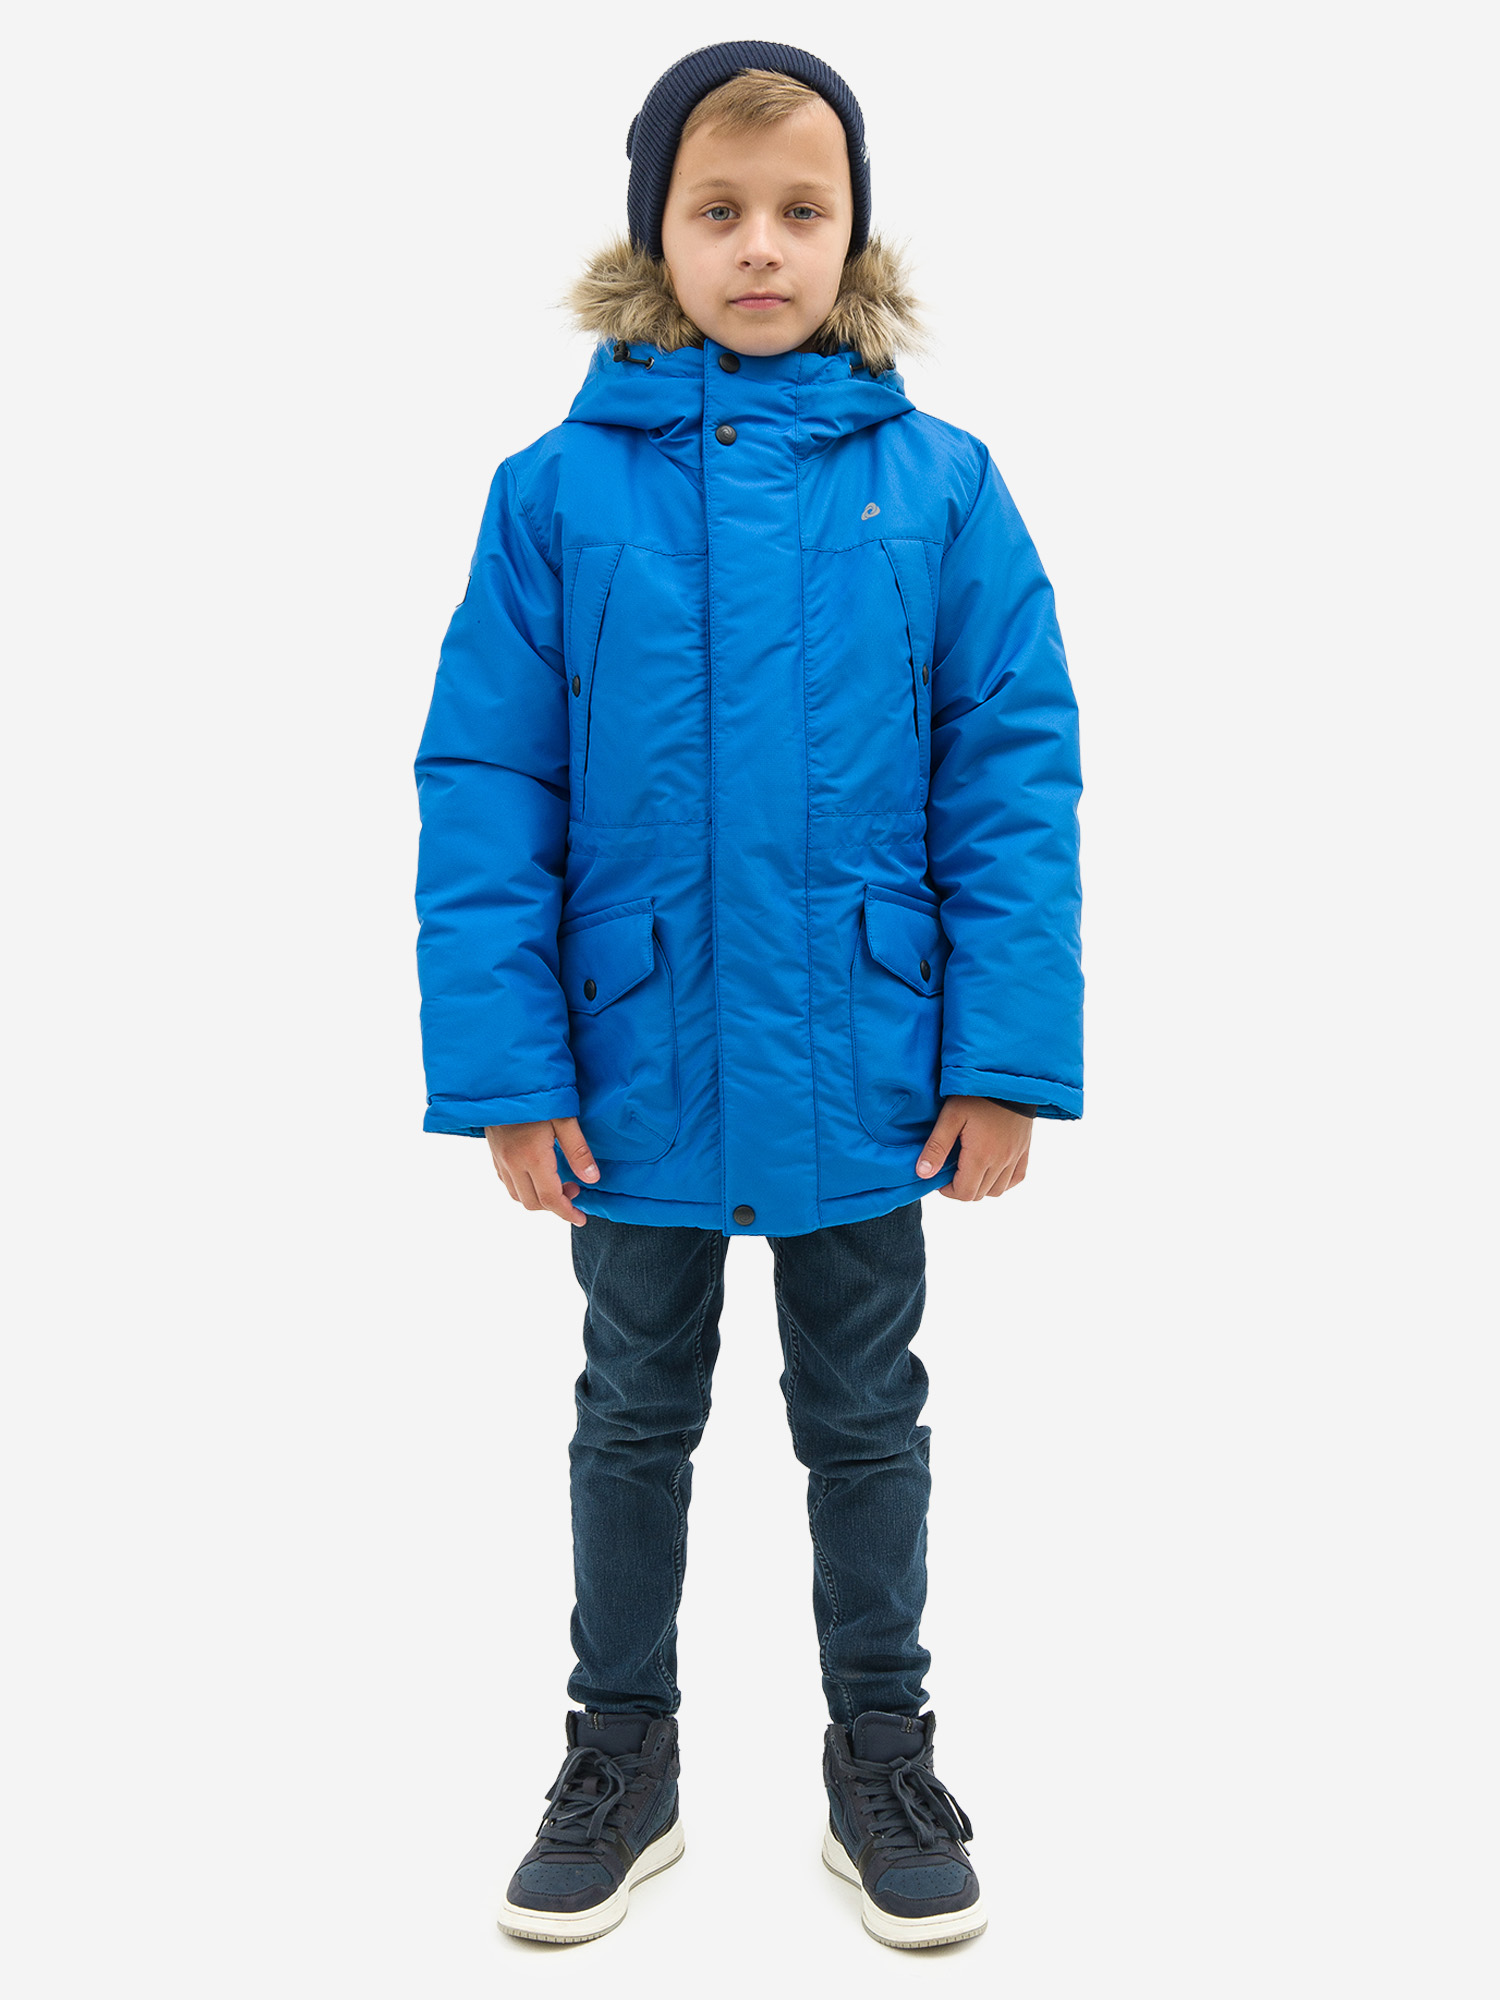 Куртка детская зимняя CosmoTex, Голубой